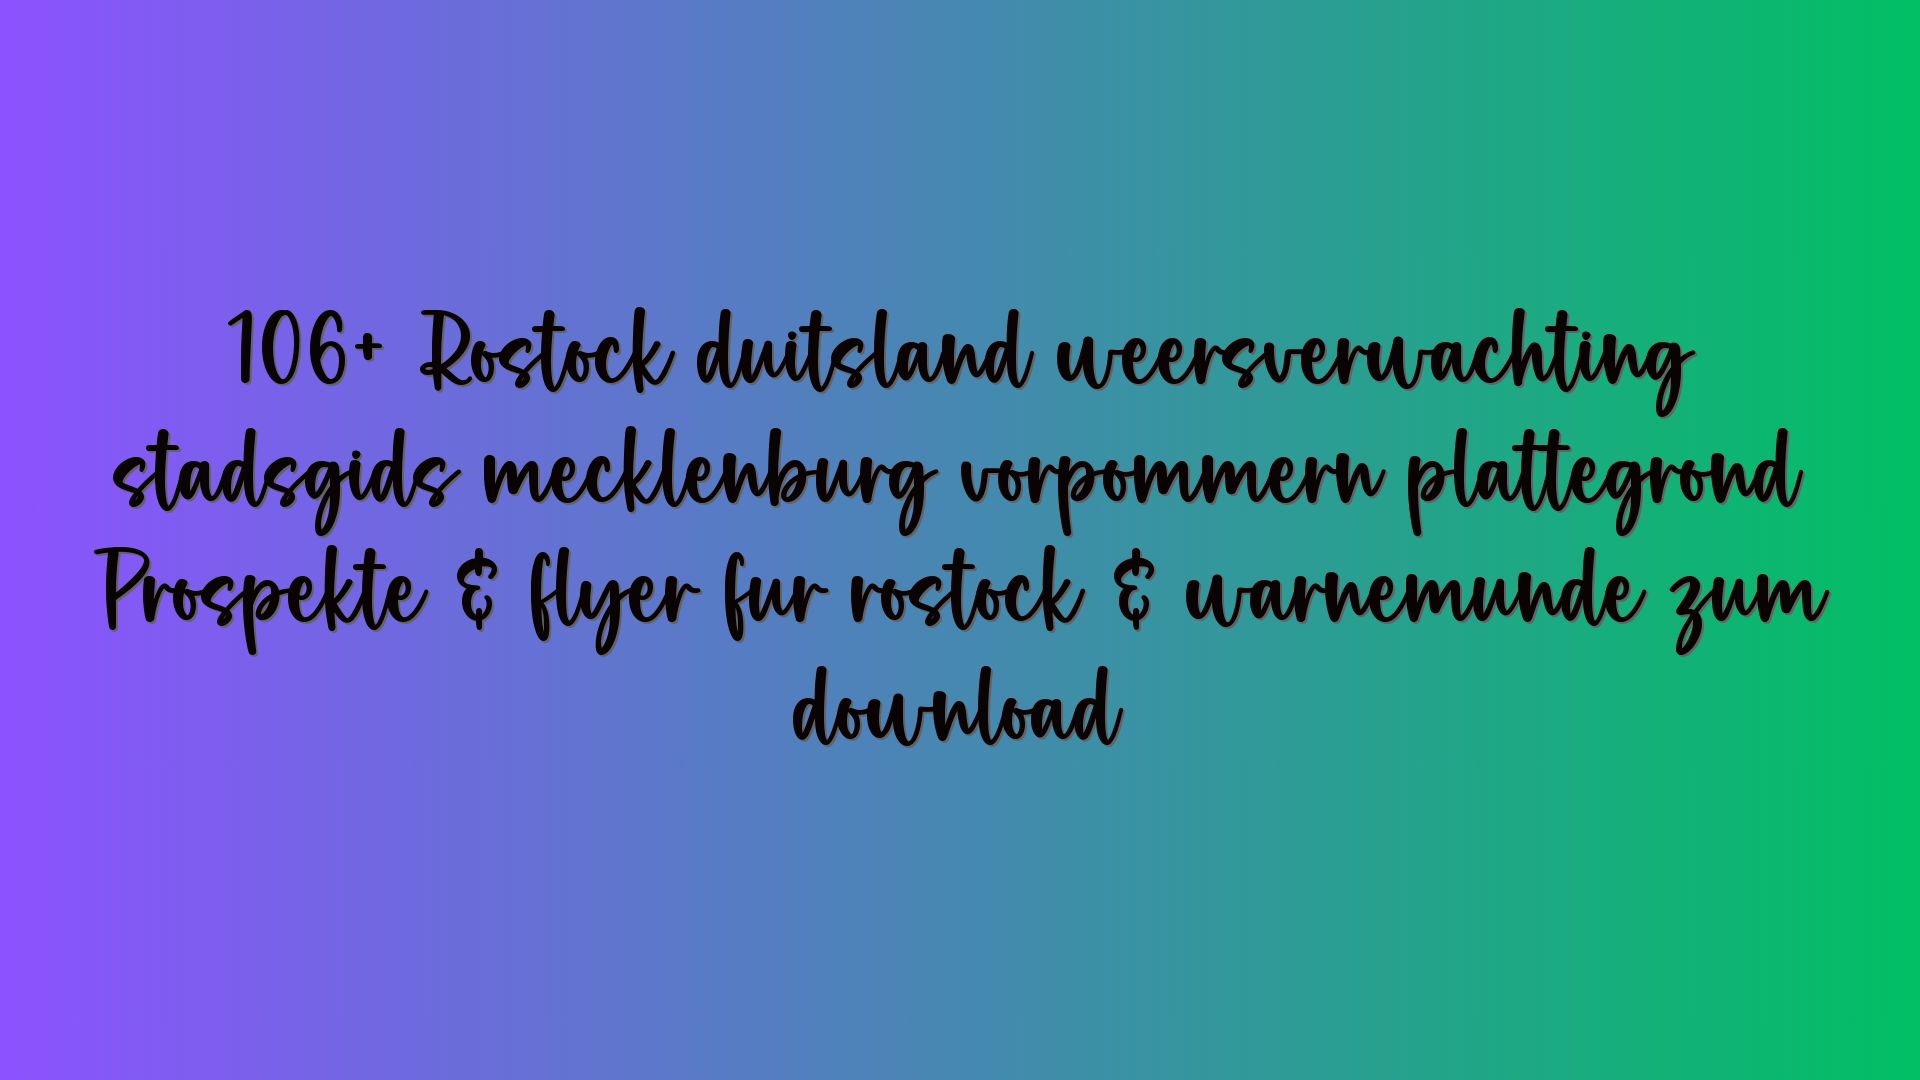 106+ Rostock duitsland weersverwachting stadsgids mecklenburg vorpommern plattegrond Prospekte & flyer für rostock & warnemünde zum download